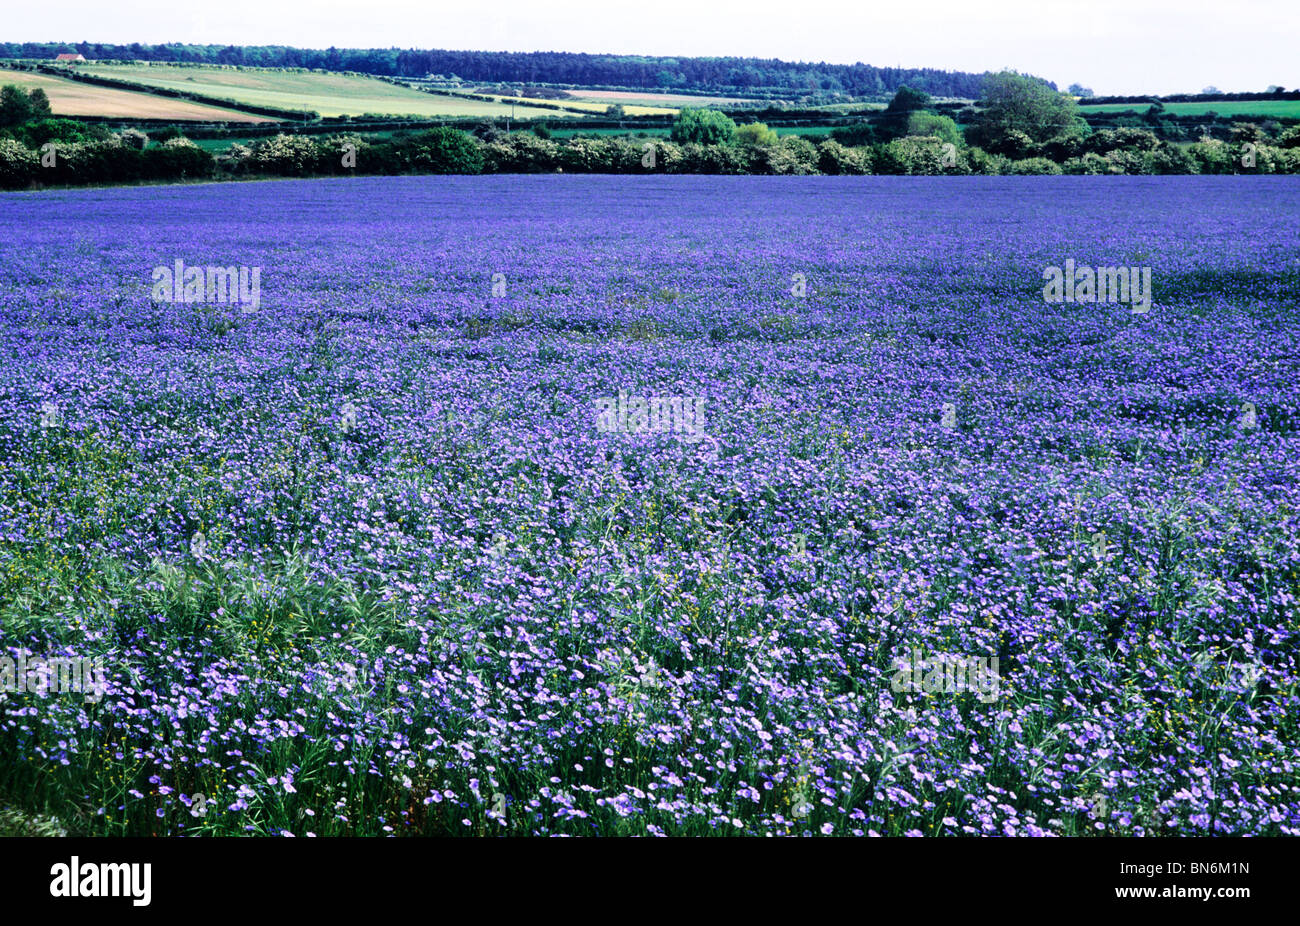 Olio di semi di lino, lino, piante coltivate agricole colture in campo raccolto i campi blu fiore fiori paesaggio di colture Foto Stock